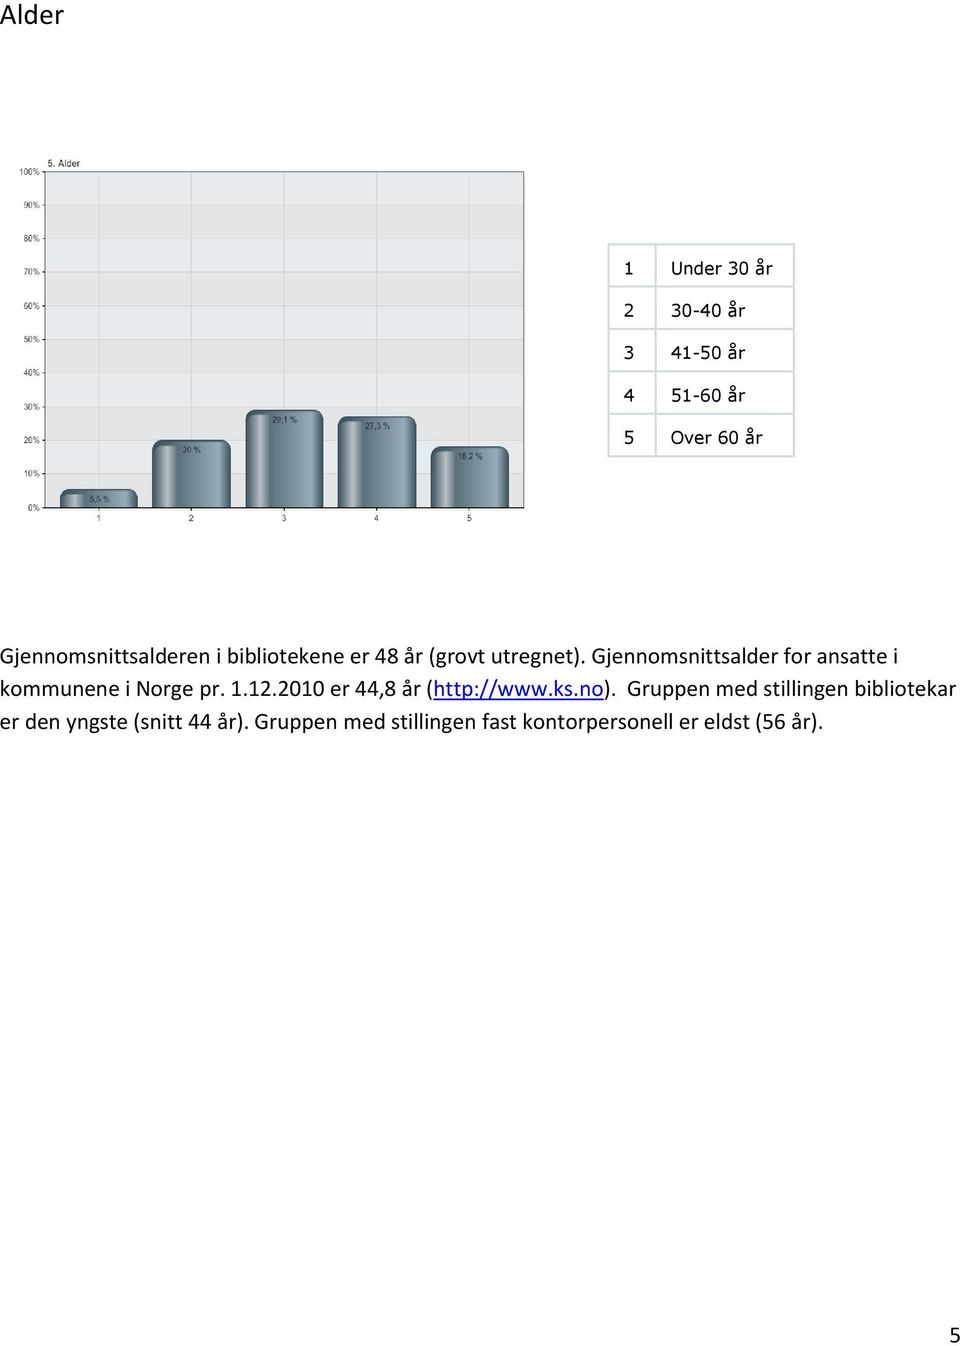 Gjennomsnittsalder for ansatte i kommunene i Norge pr. 1.12.2010 er 44,8 år (http://www.